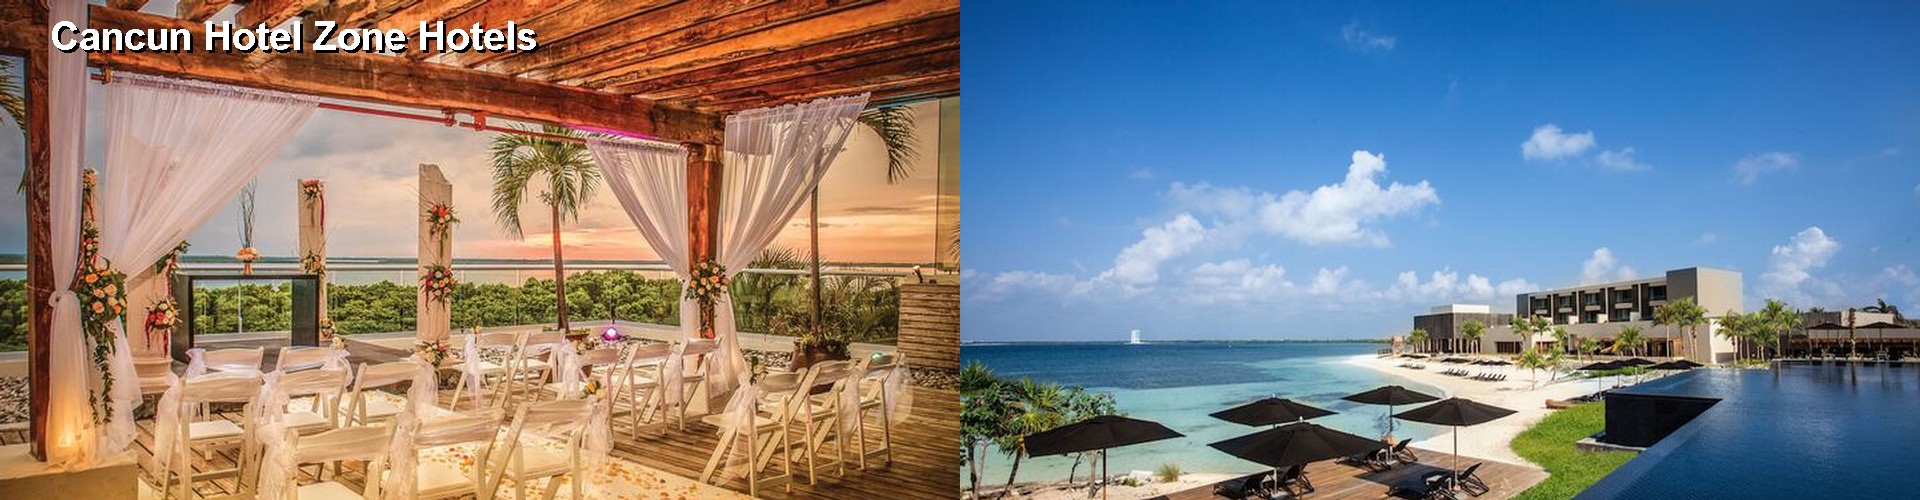 5 Best Hotels near Cancun Hotel Zone